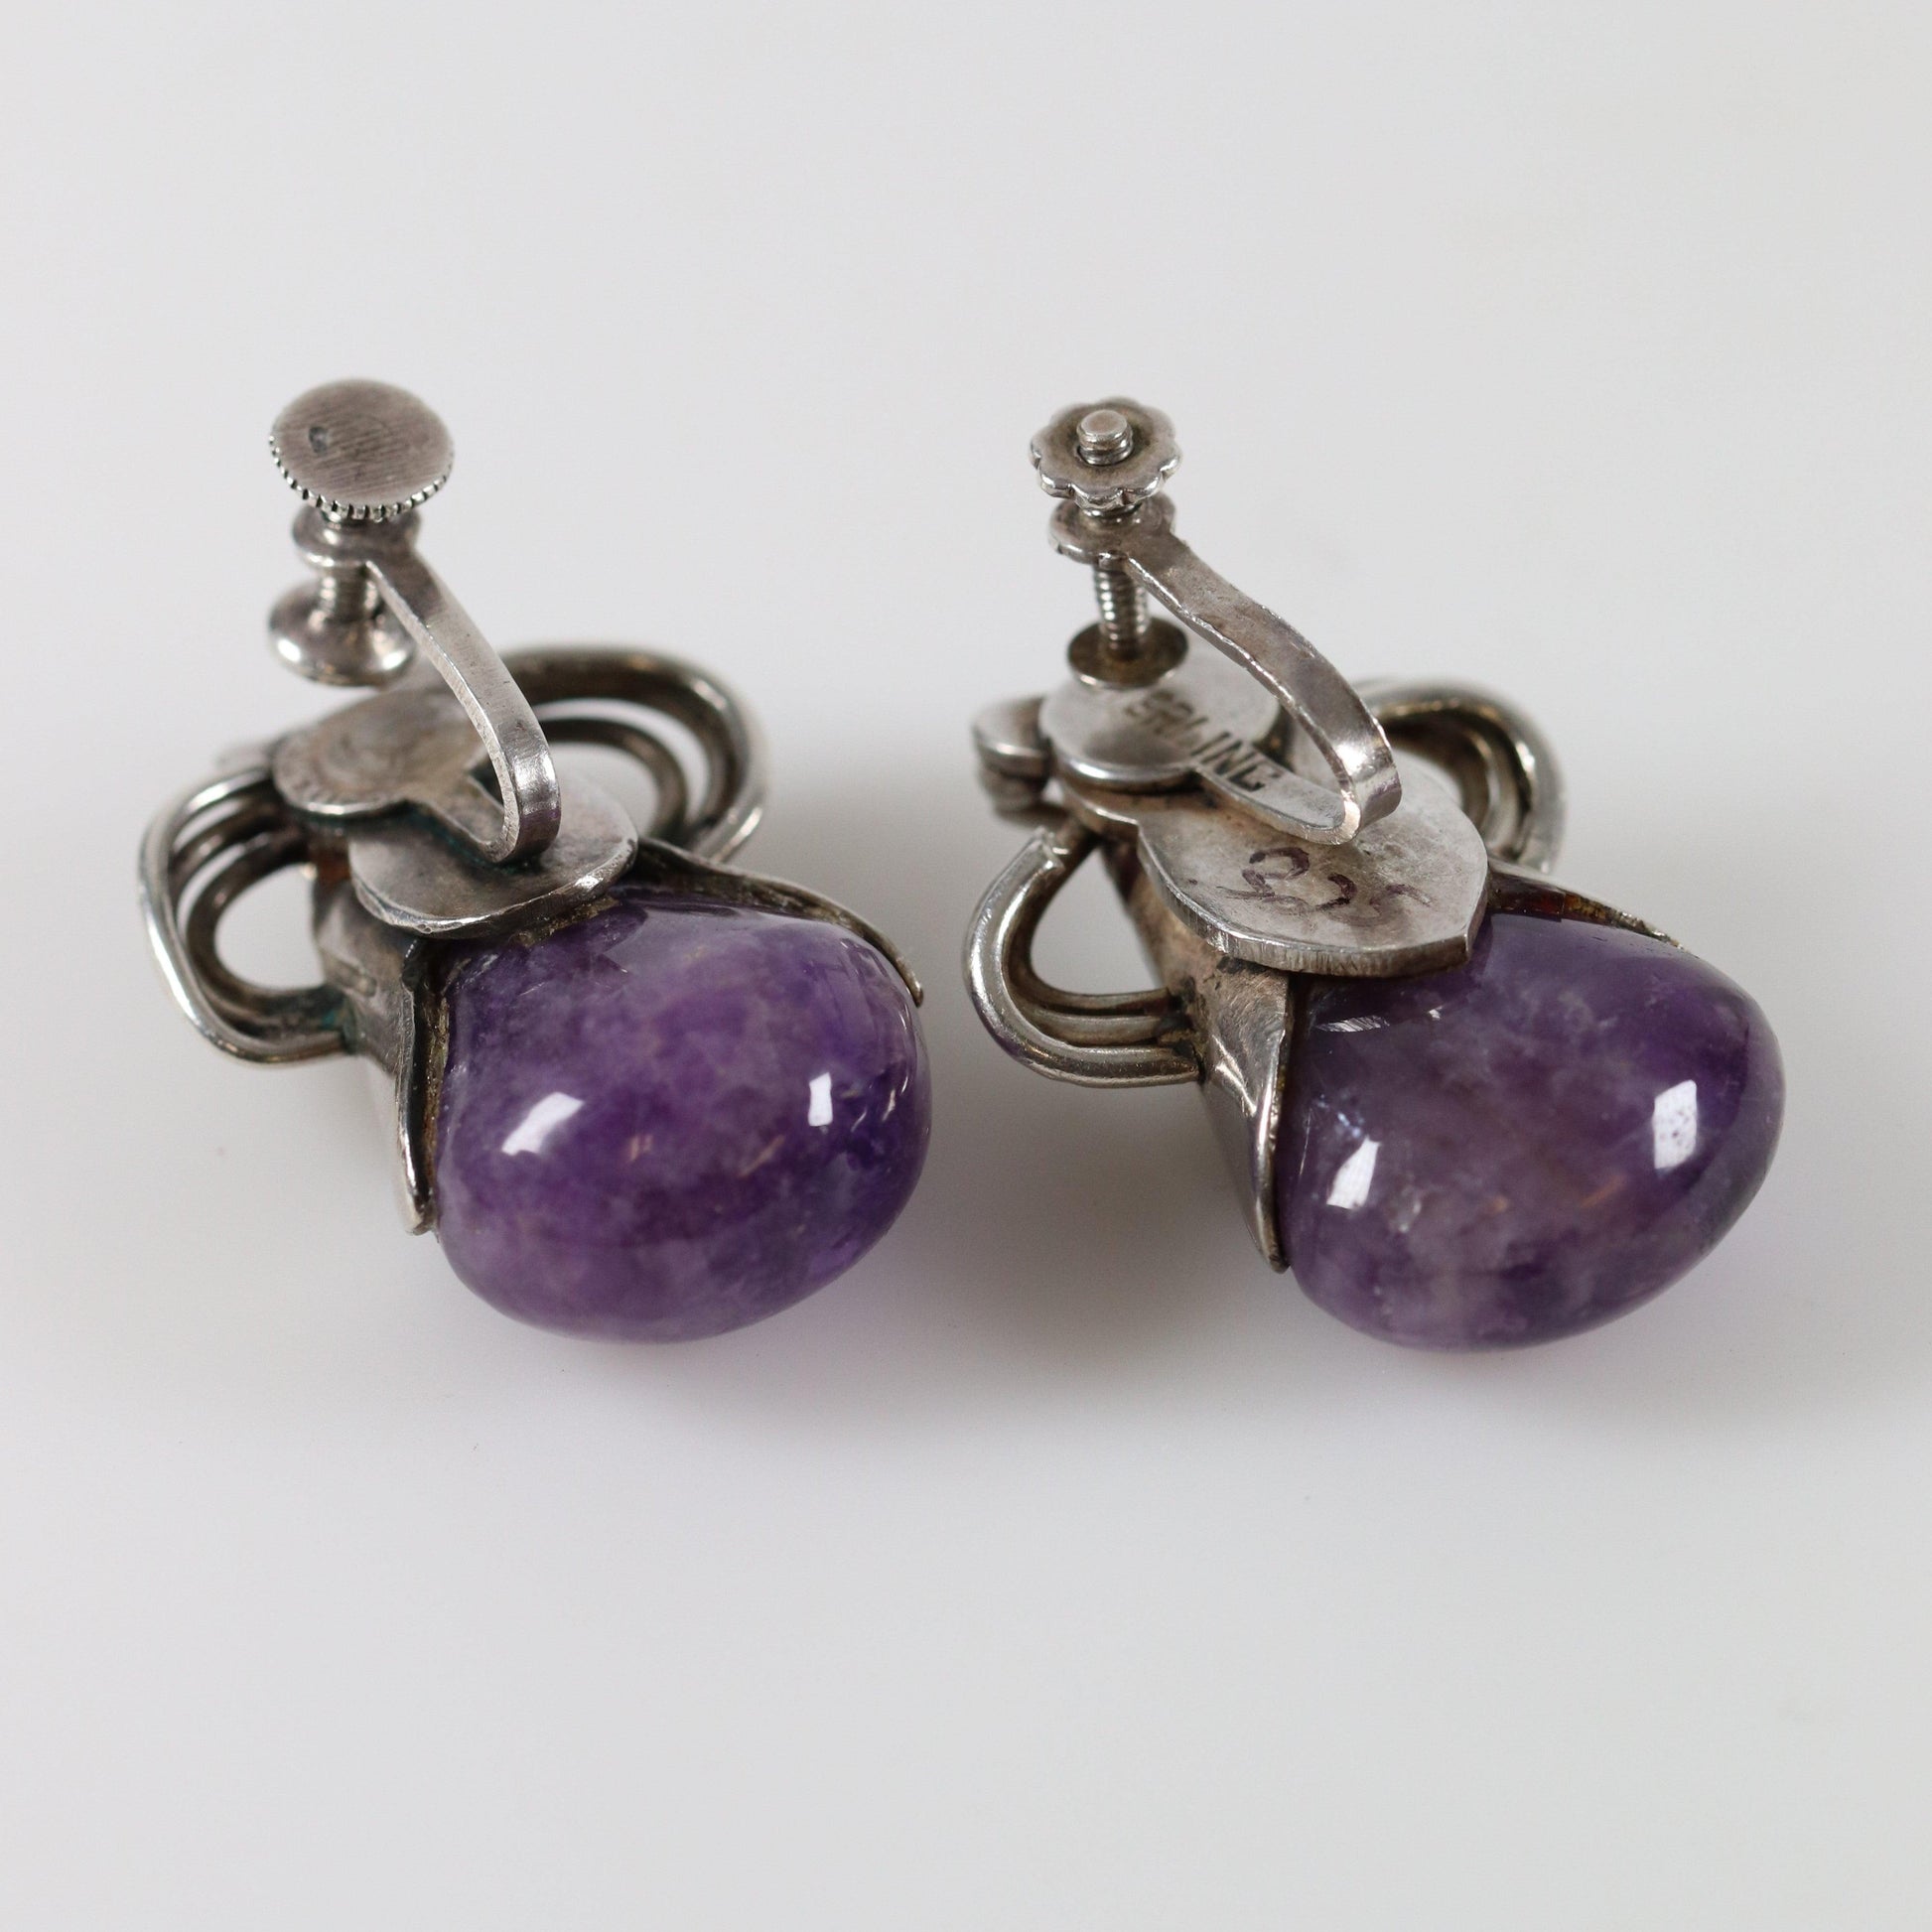 Vintage William Spratling Taxco Silver Mexican Jewelry | Mid-Century Modernist Amethyst Drop Earrings - Carmel Fine Silver Jewelry